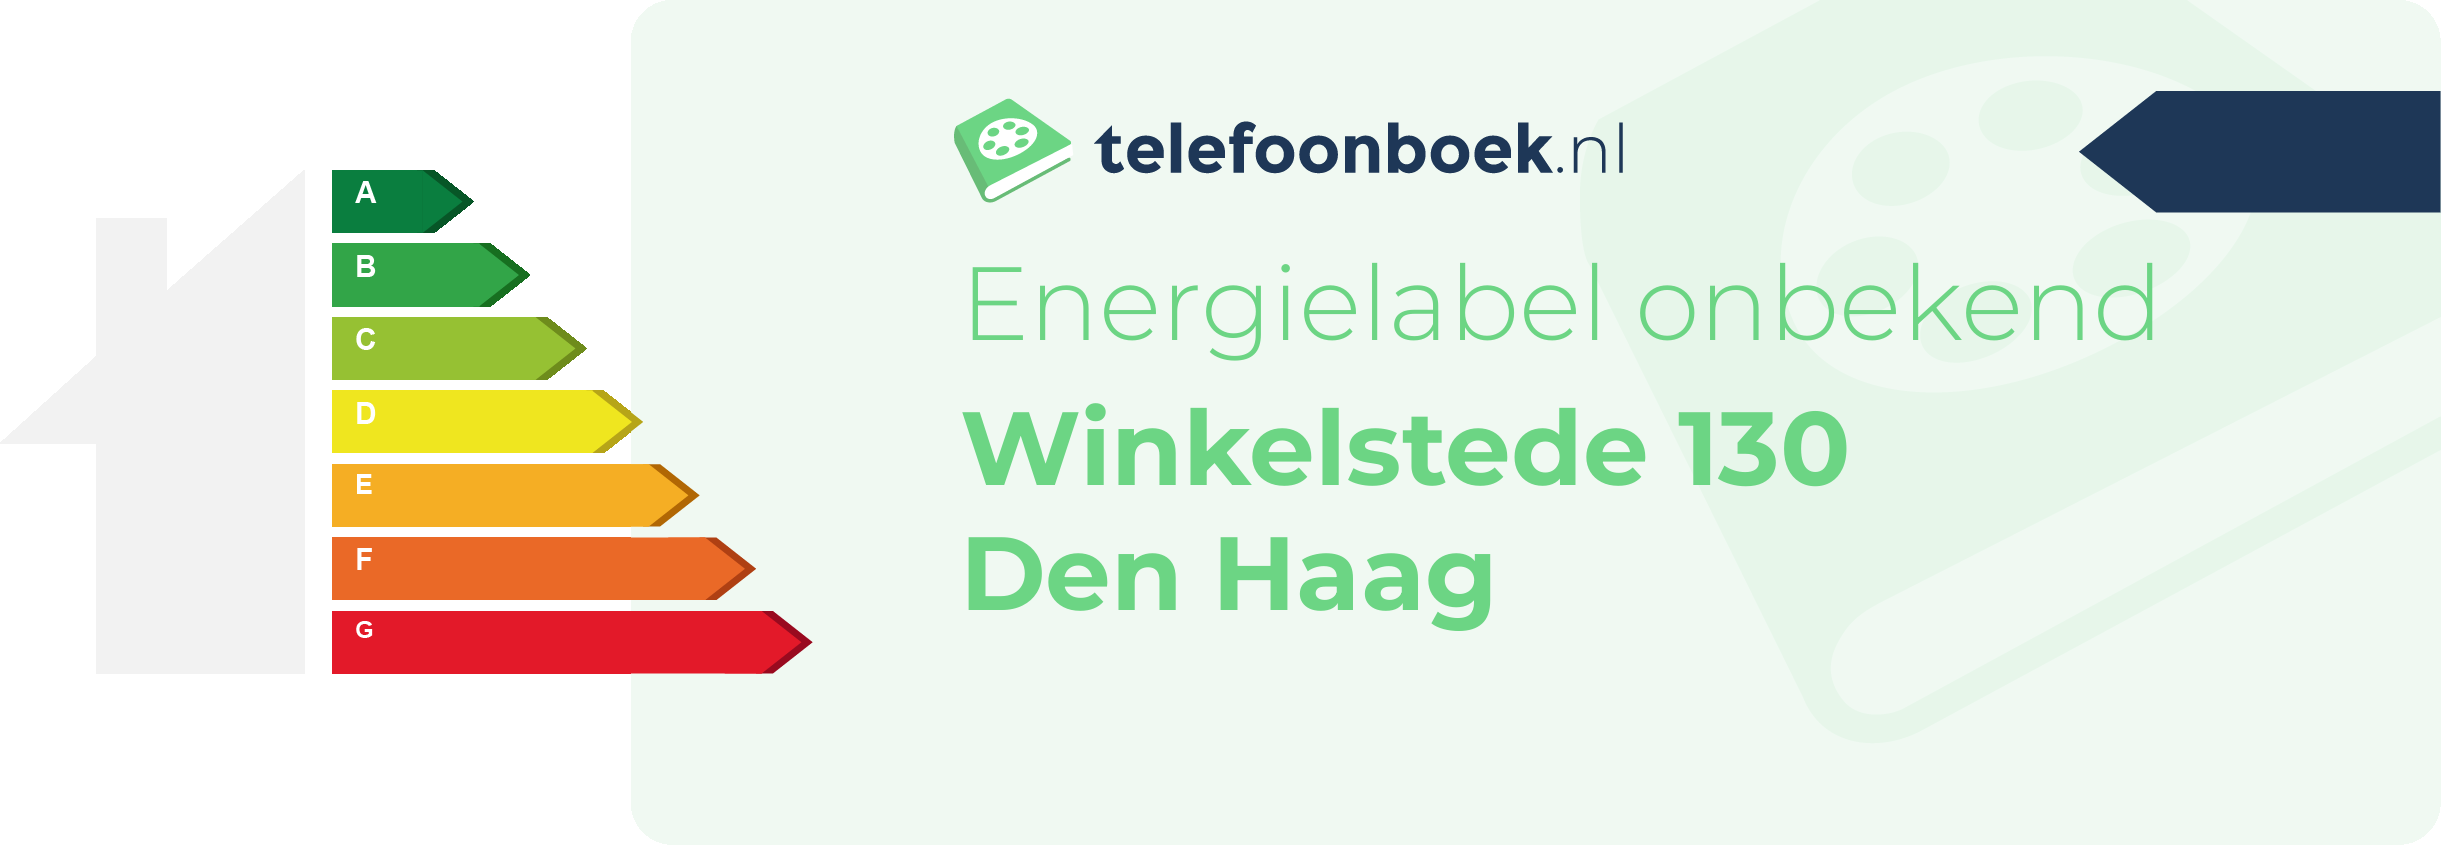 Energielabel Winkelstede 130 Den Haag